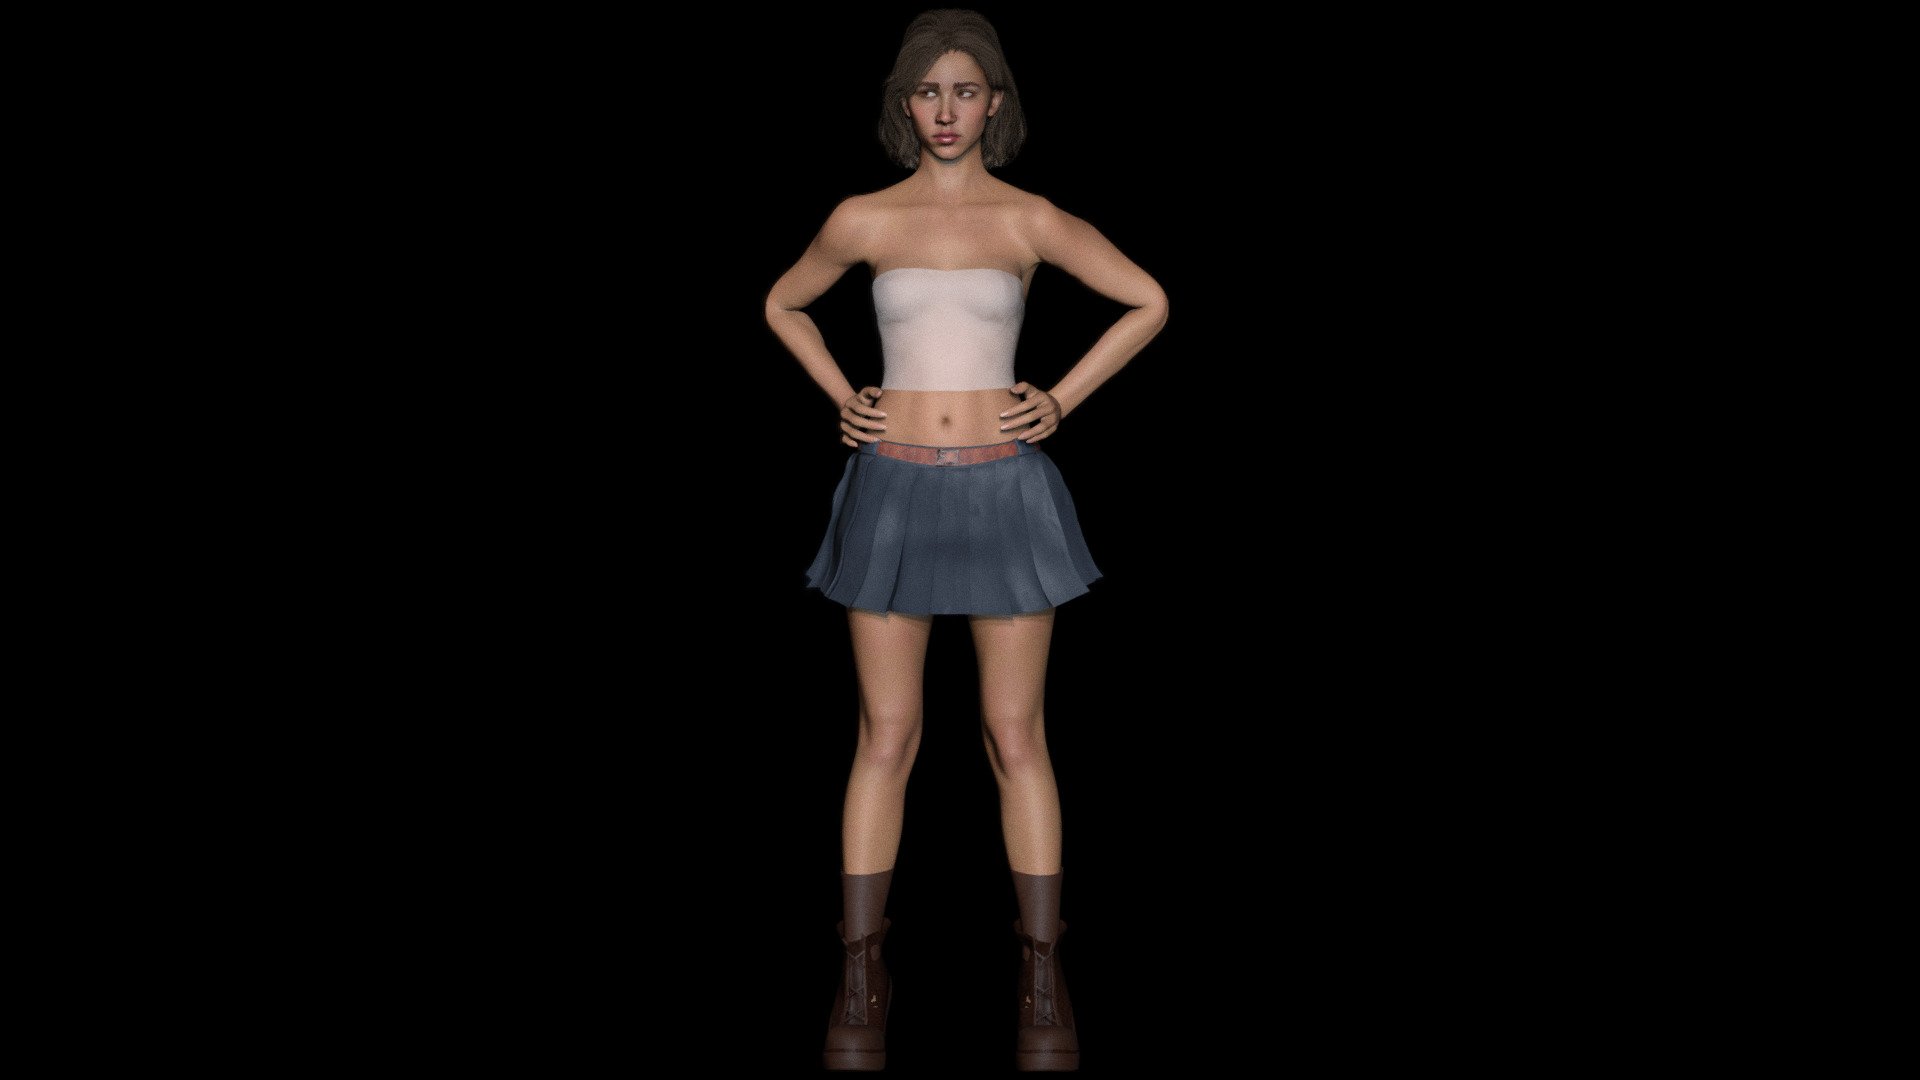 Girl in skirt - 3D model by Cg Stuff (@bokeh) 3d model